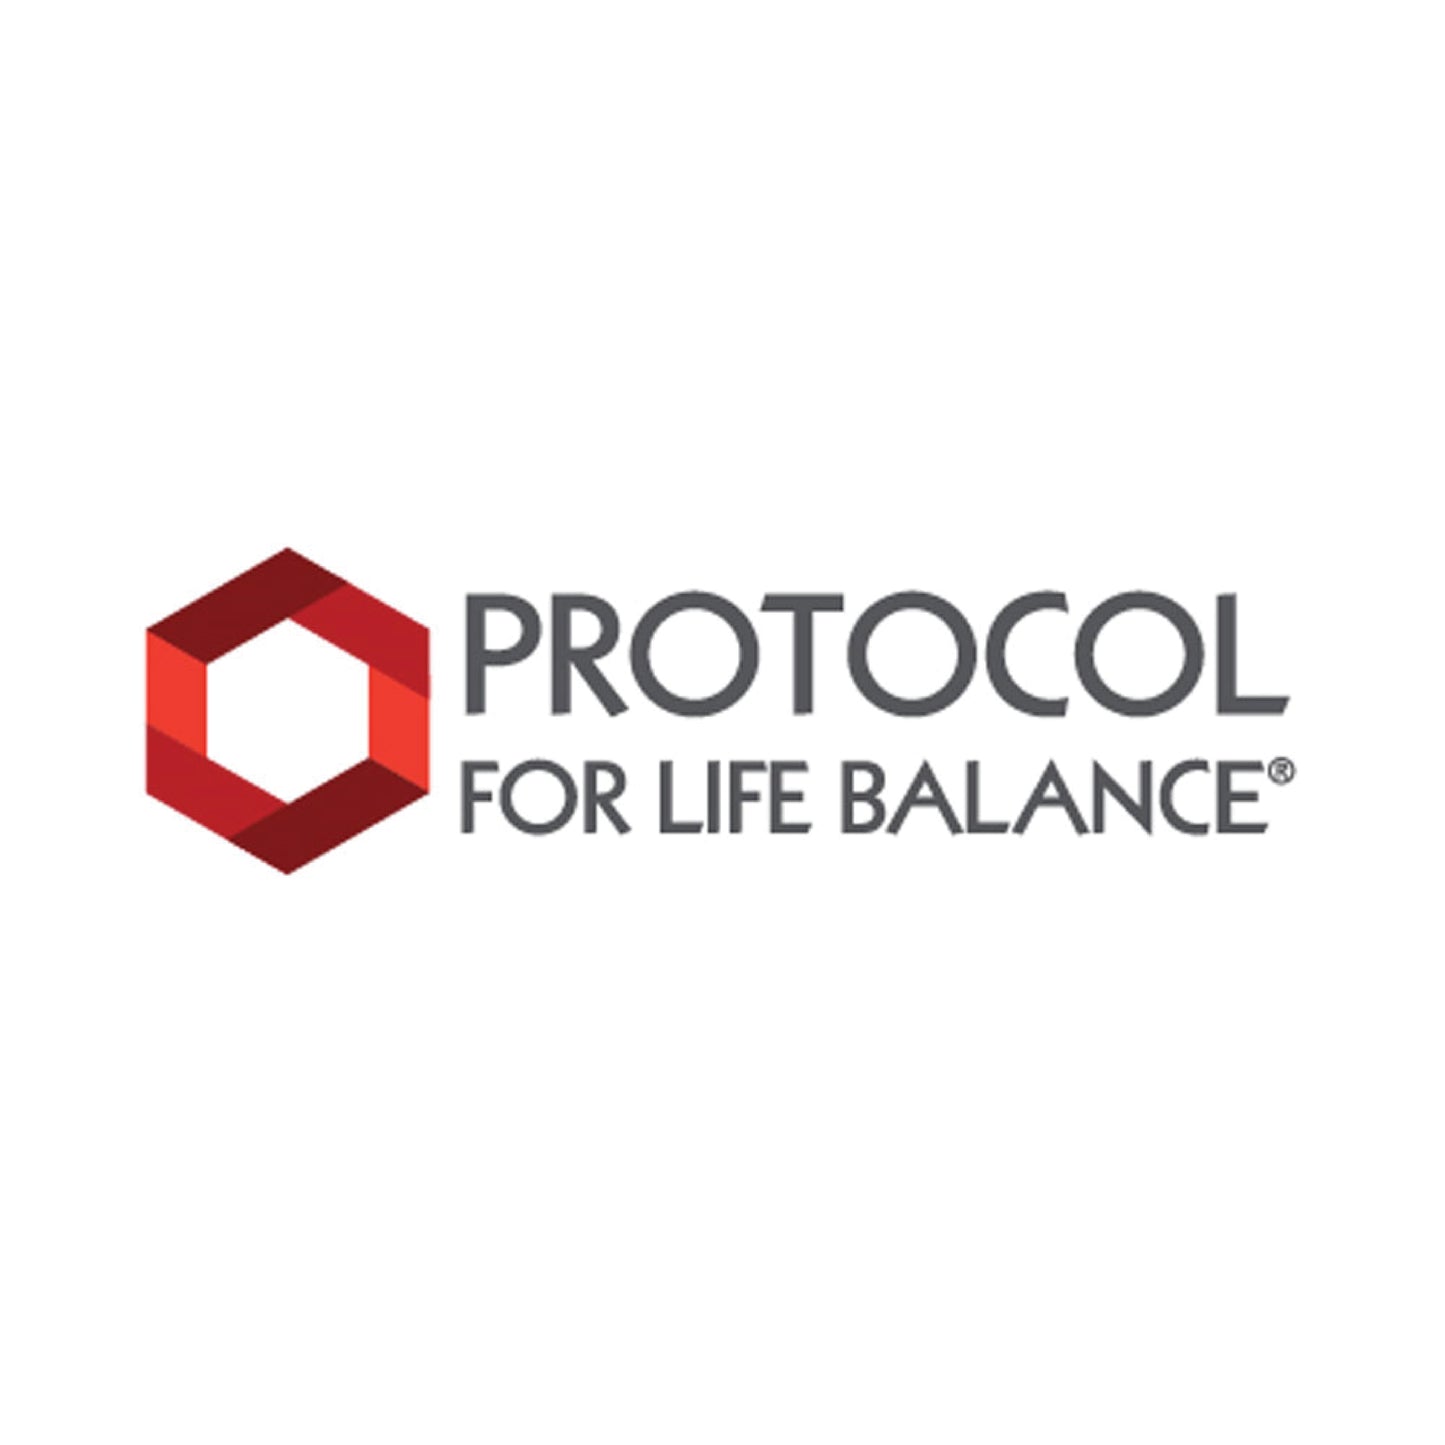 Protocol for Life Balance, Biotin, 5,000 mcg, 90 Veg Capsules